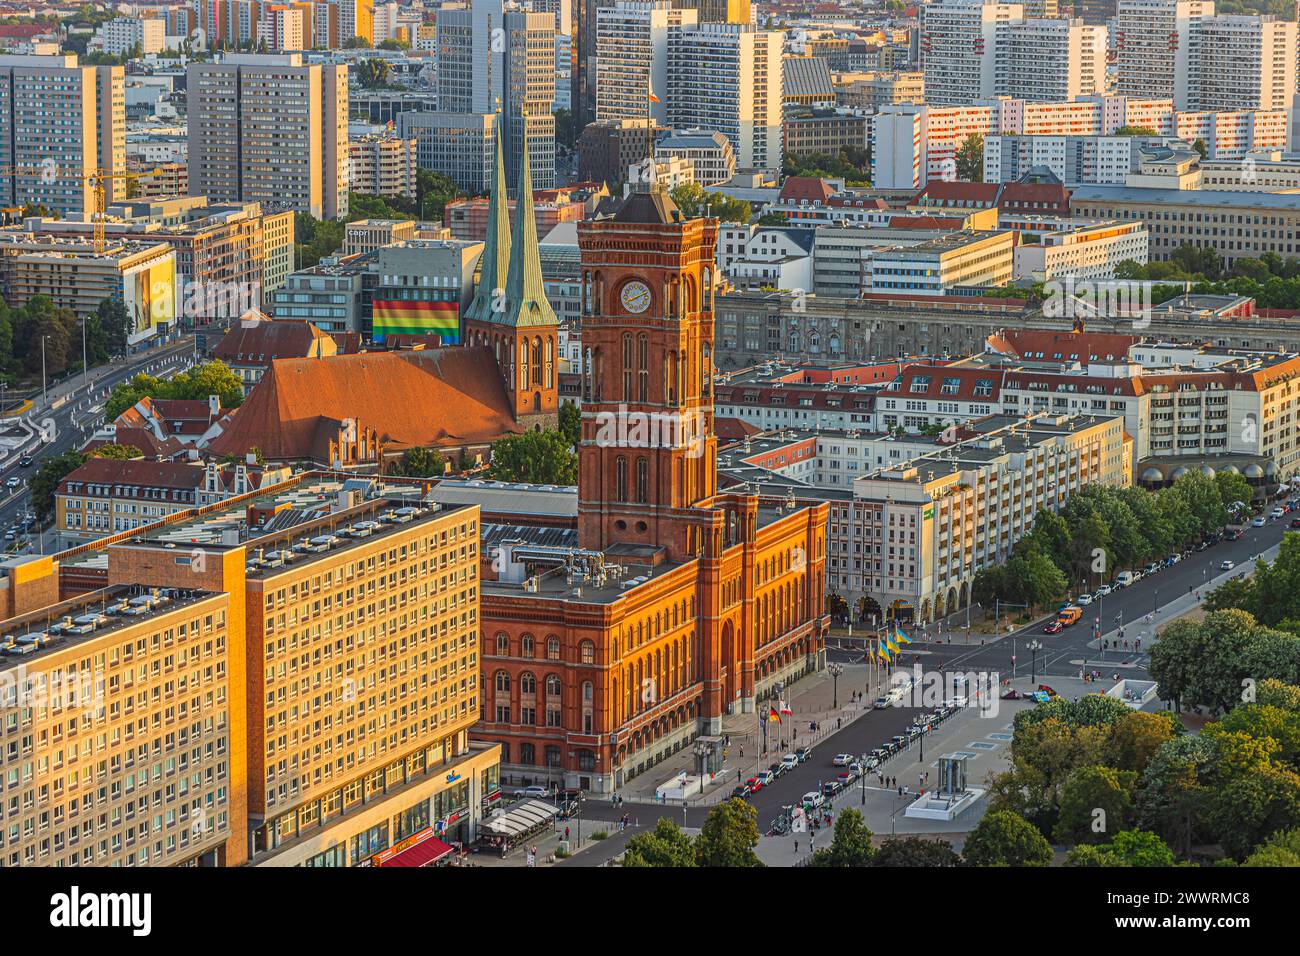 Hôtel de ville rouge de Berlin dans le centre de la capitale de l'Allemagne. Bâtiments résidentiels et commerciaux le long de la rue. Vue de dessus de la ligne d'horizon Banque D'Images